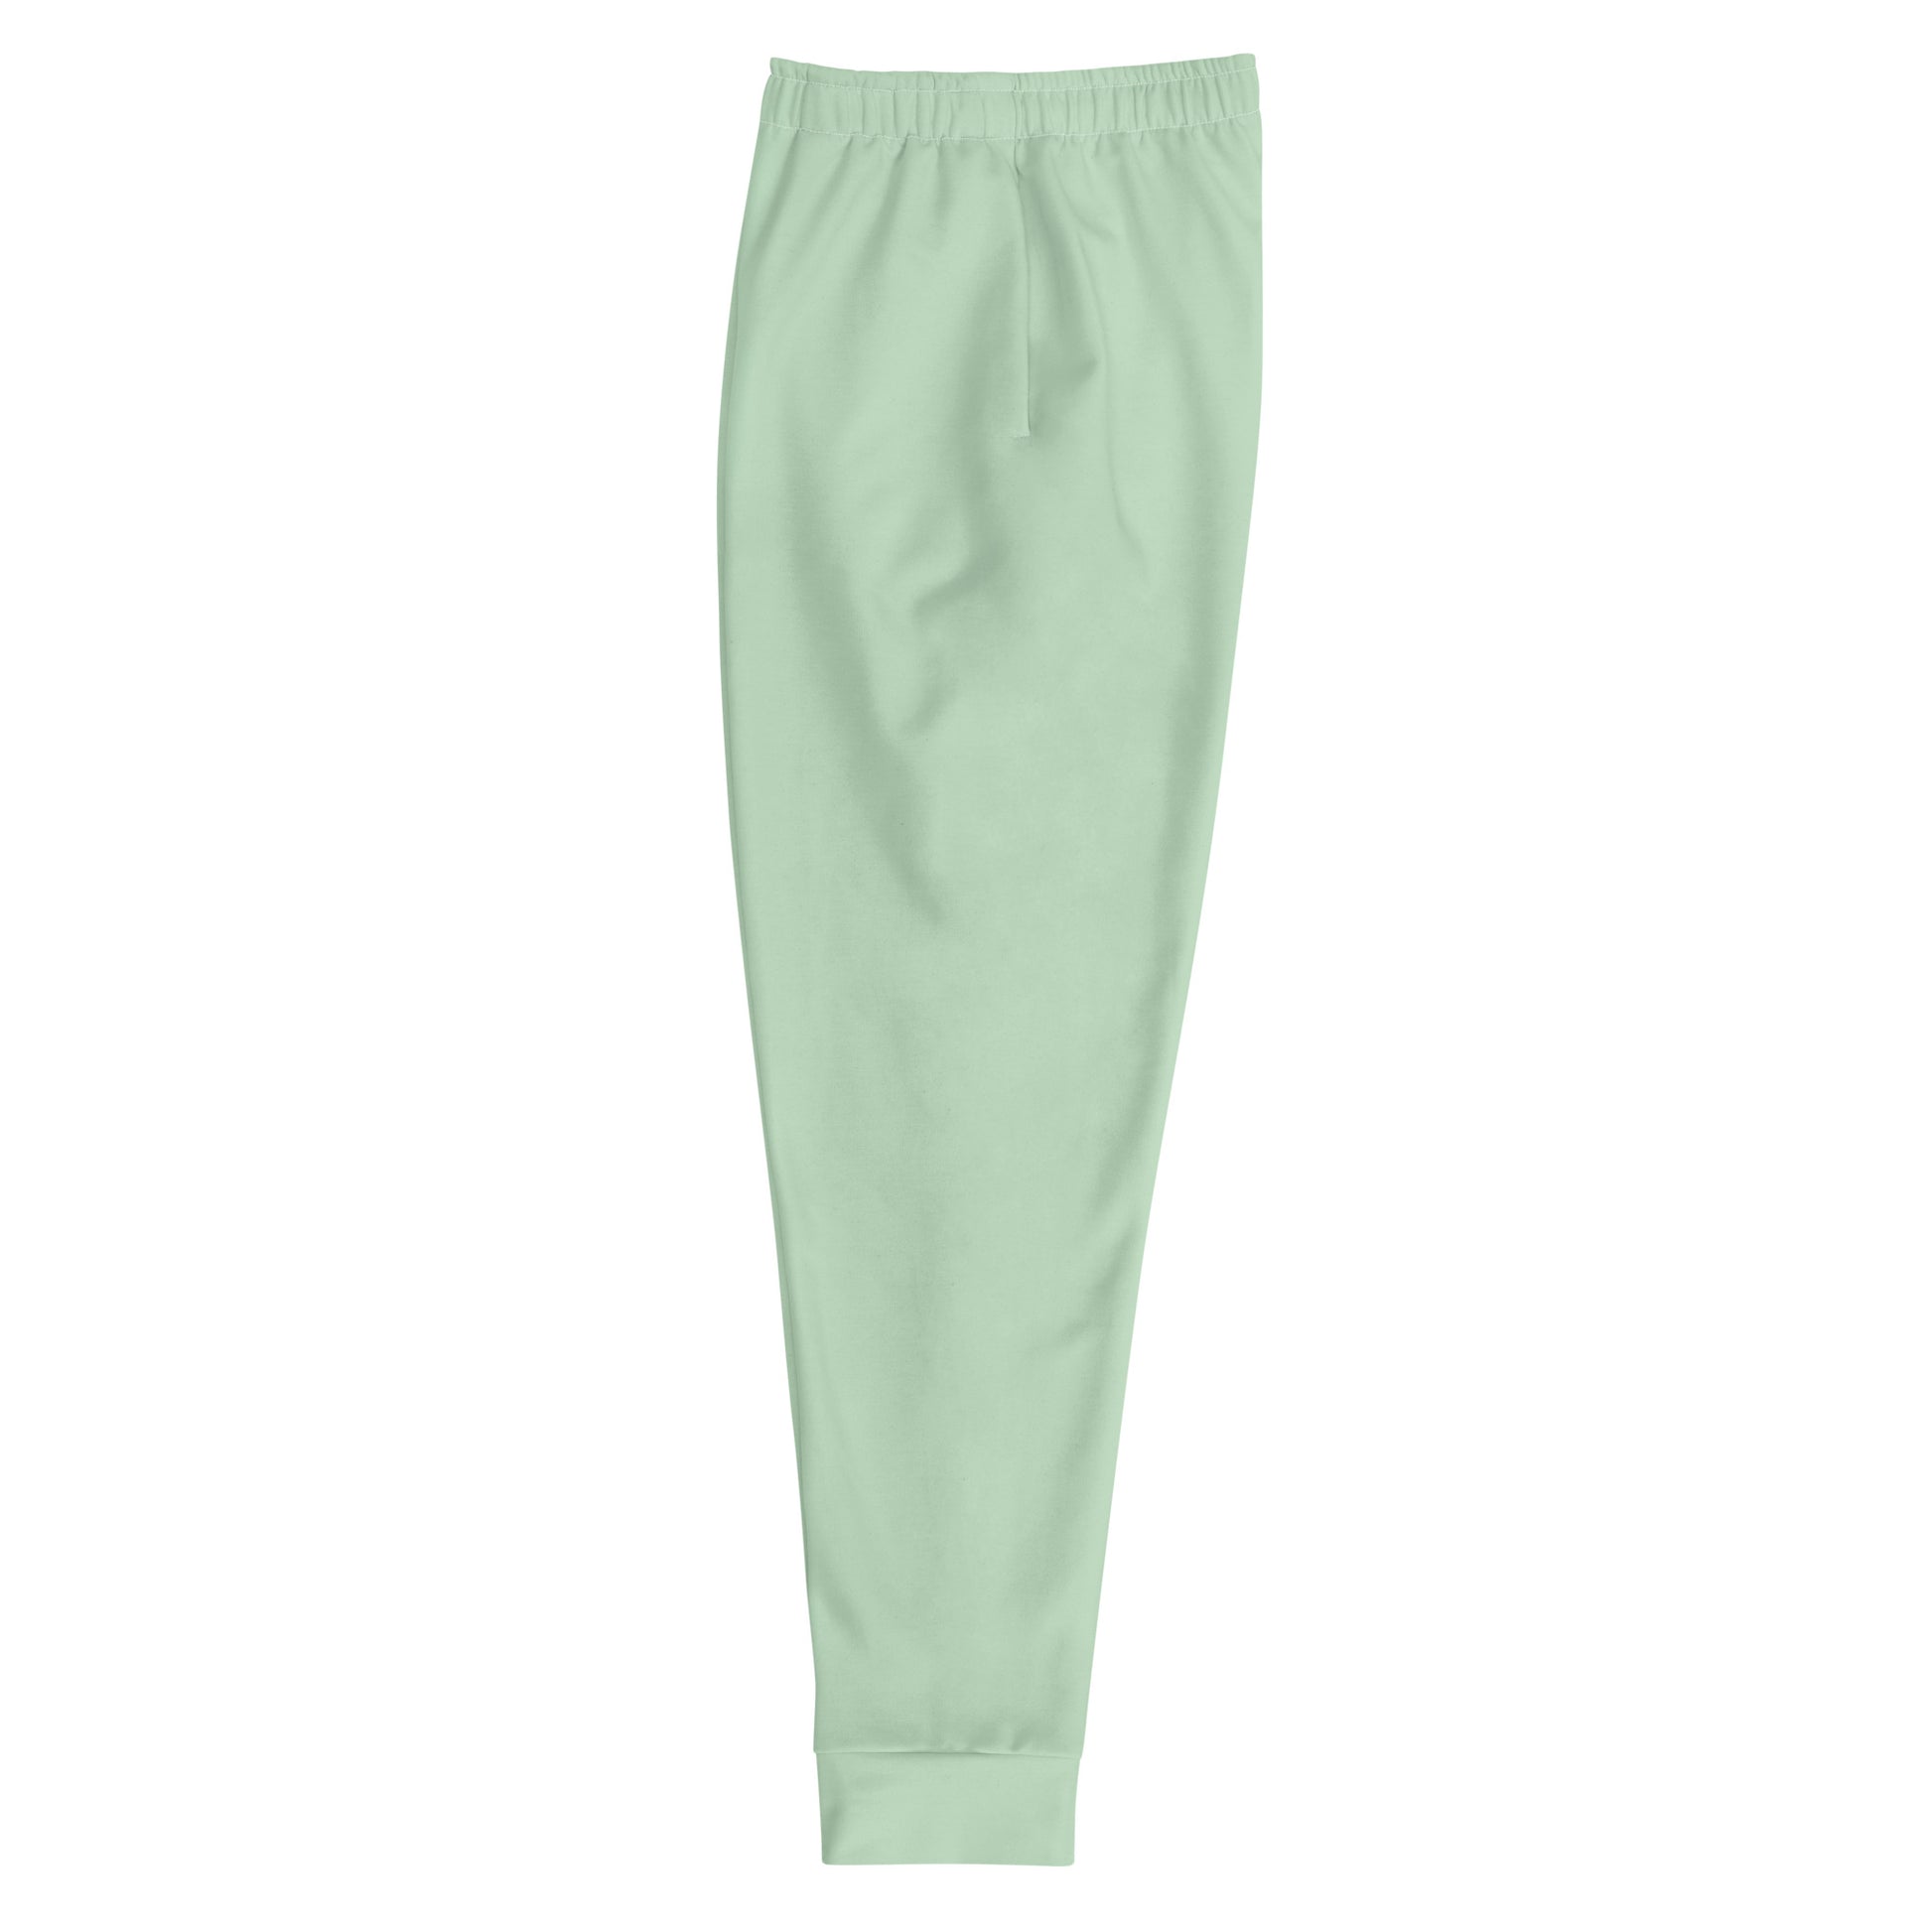 Men’s Mint Green Sweatpants Size Medium 